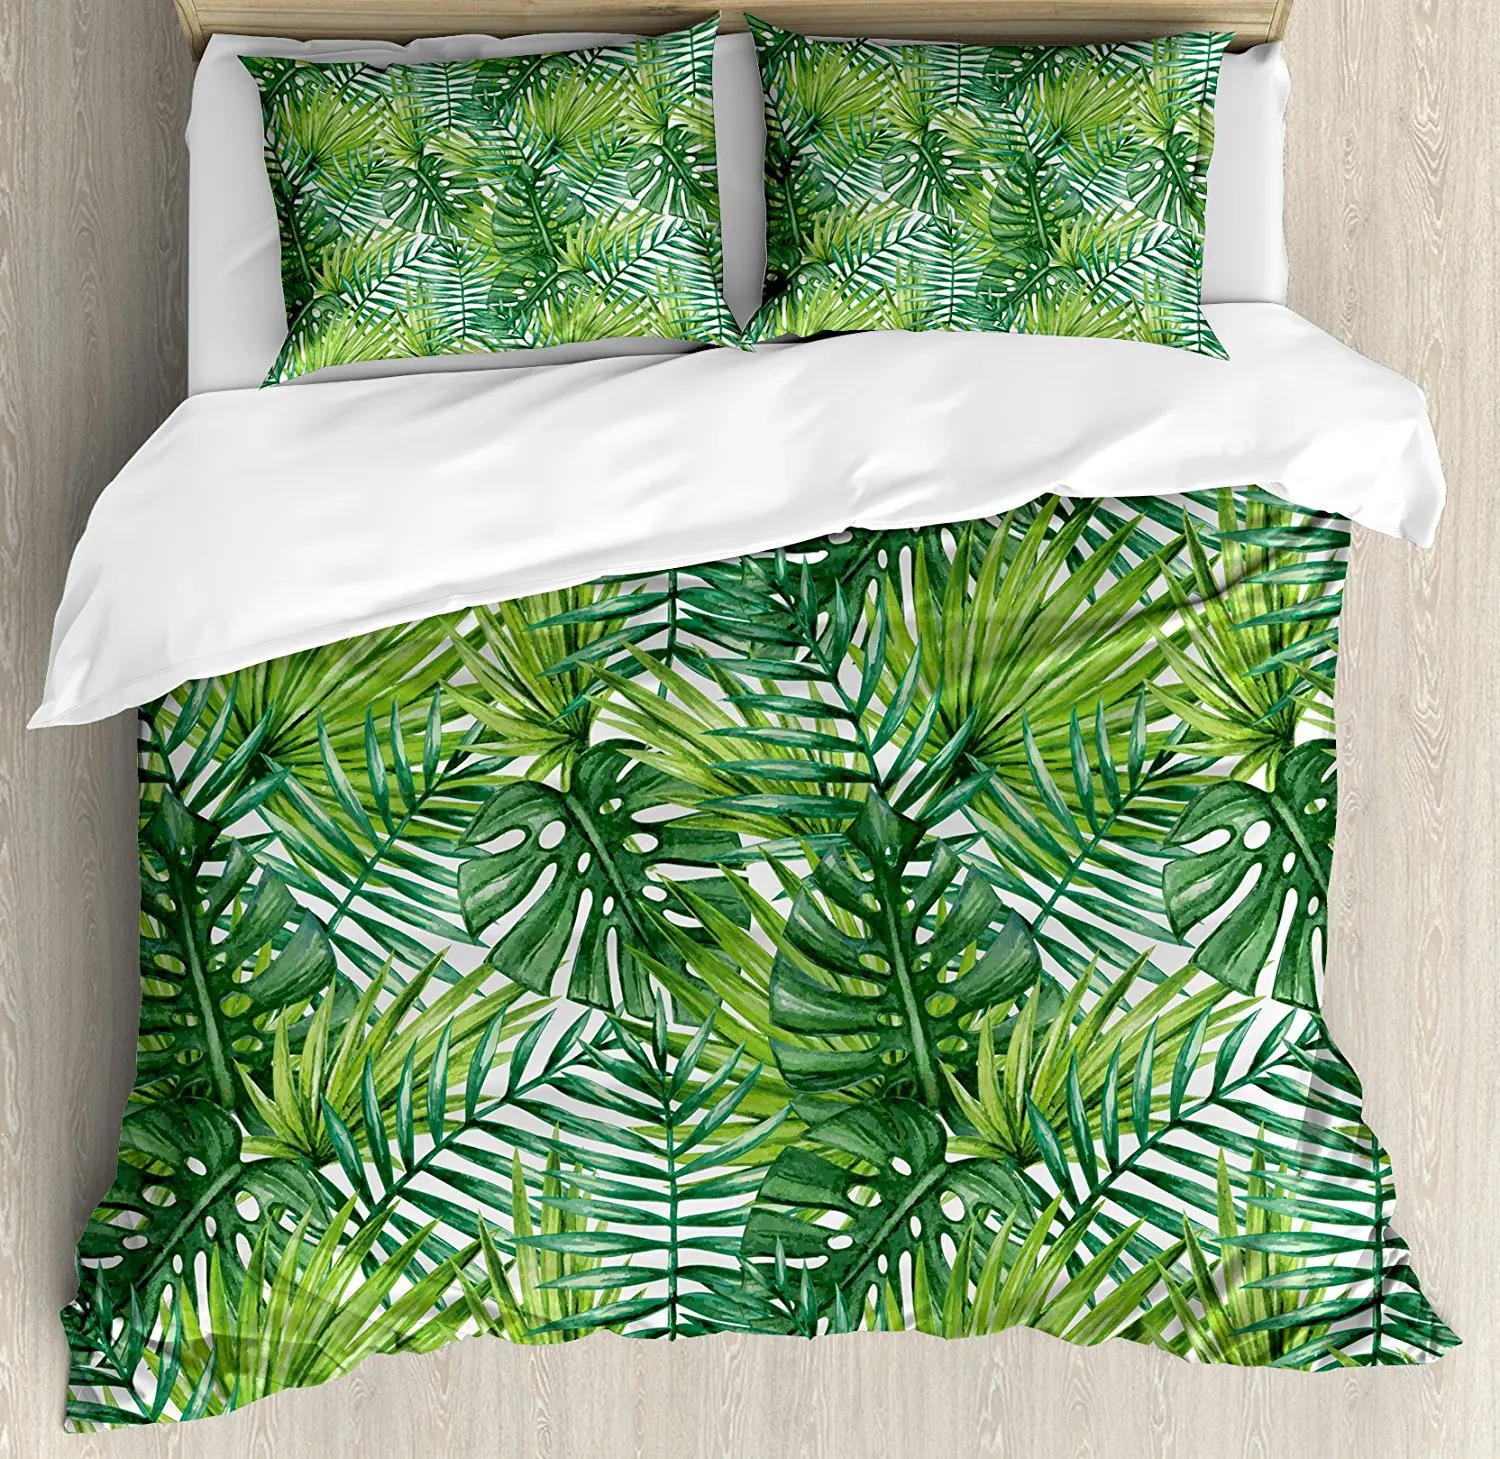 Tropical Duvet Cover Set Coconut Palm Tree Nature Paradise Plants